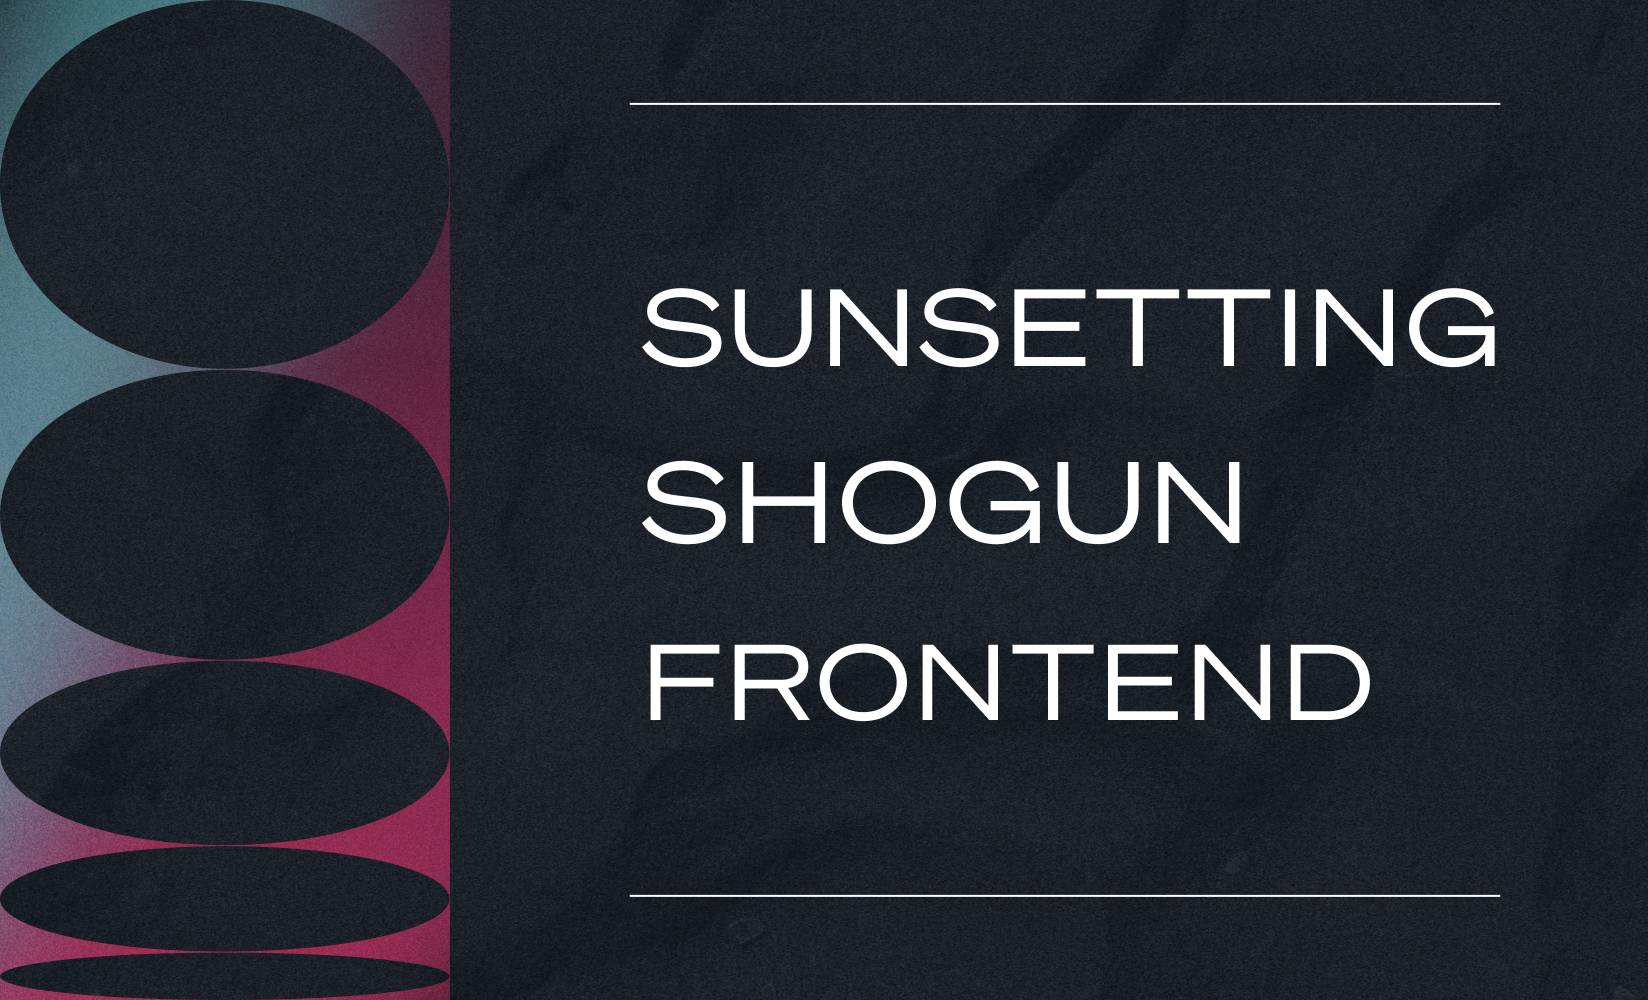 Sunsetting Shogun Frontend sunsetting Shogun Frontend